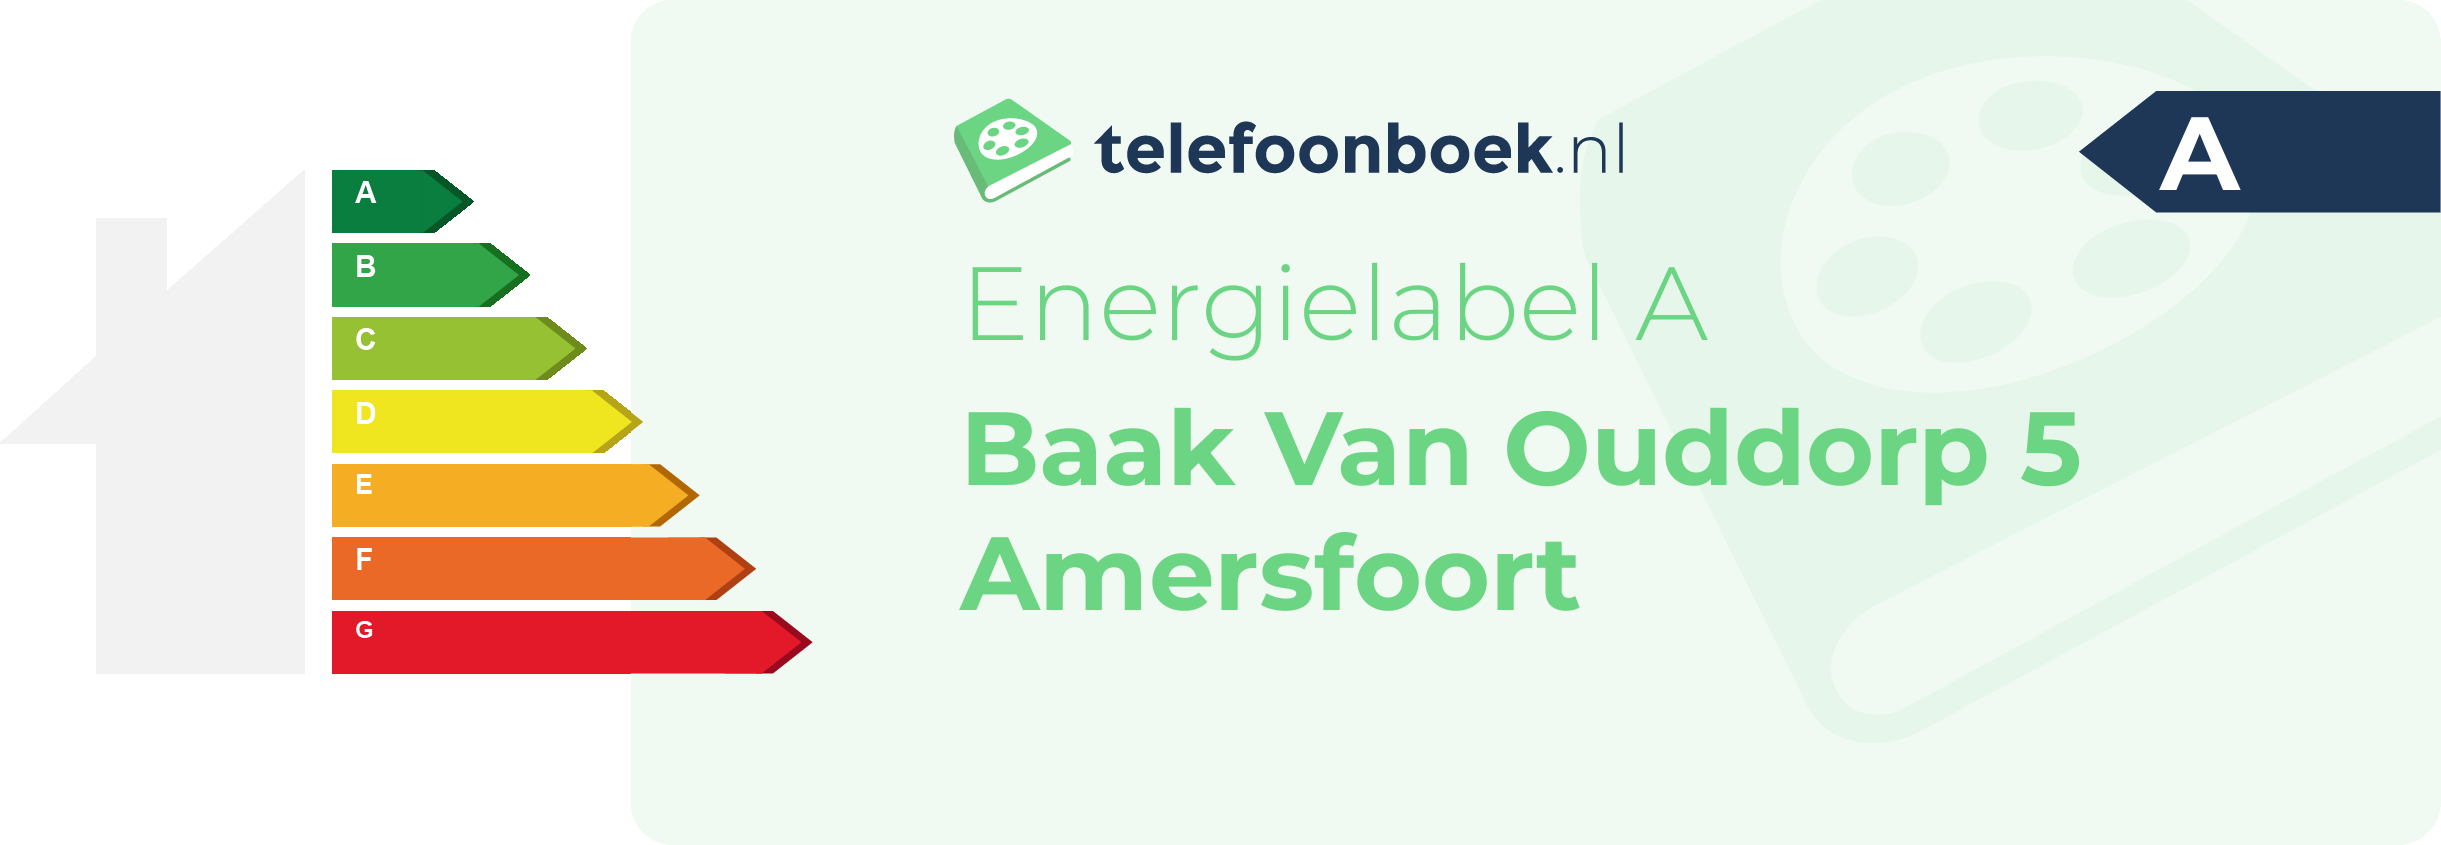 Energielabel Baak Van Ouddorp 5 Amersfoort